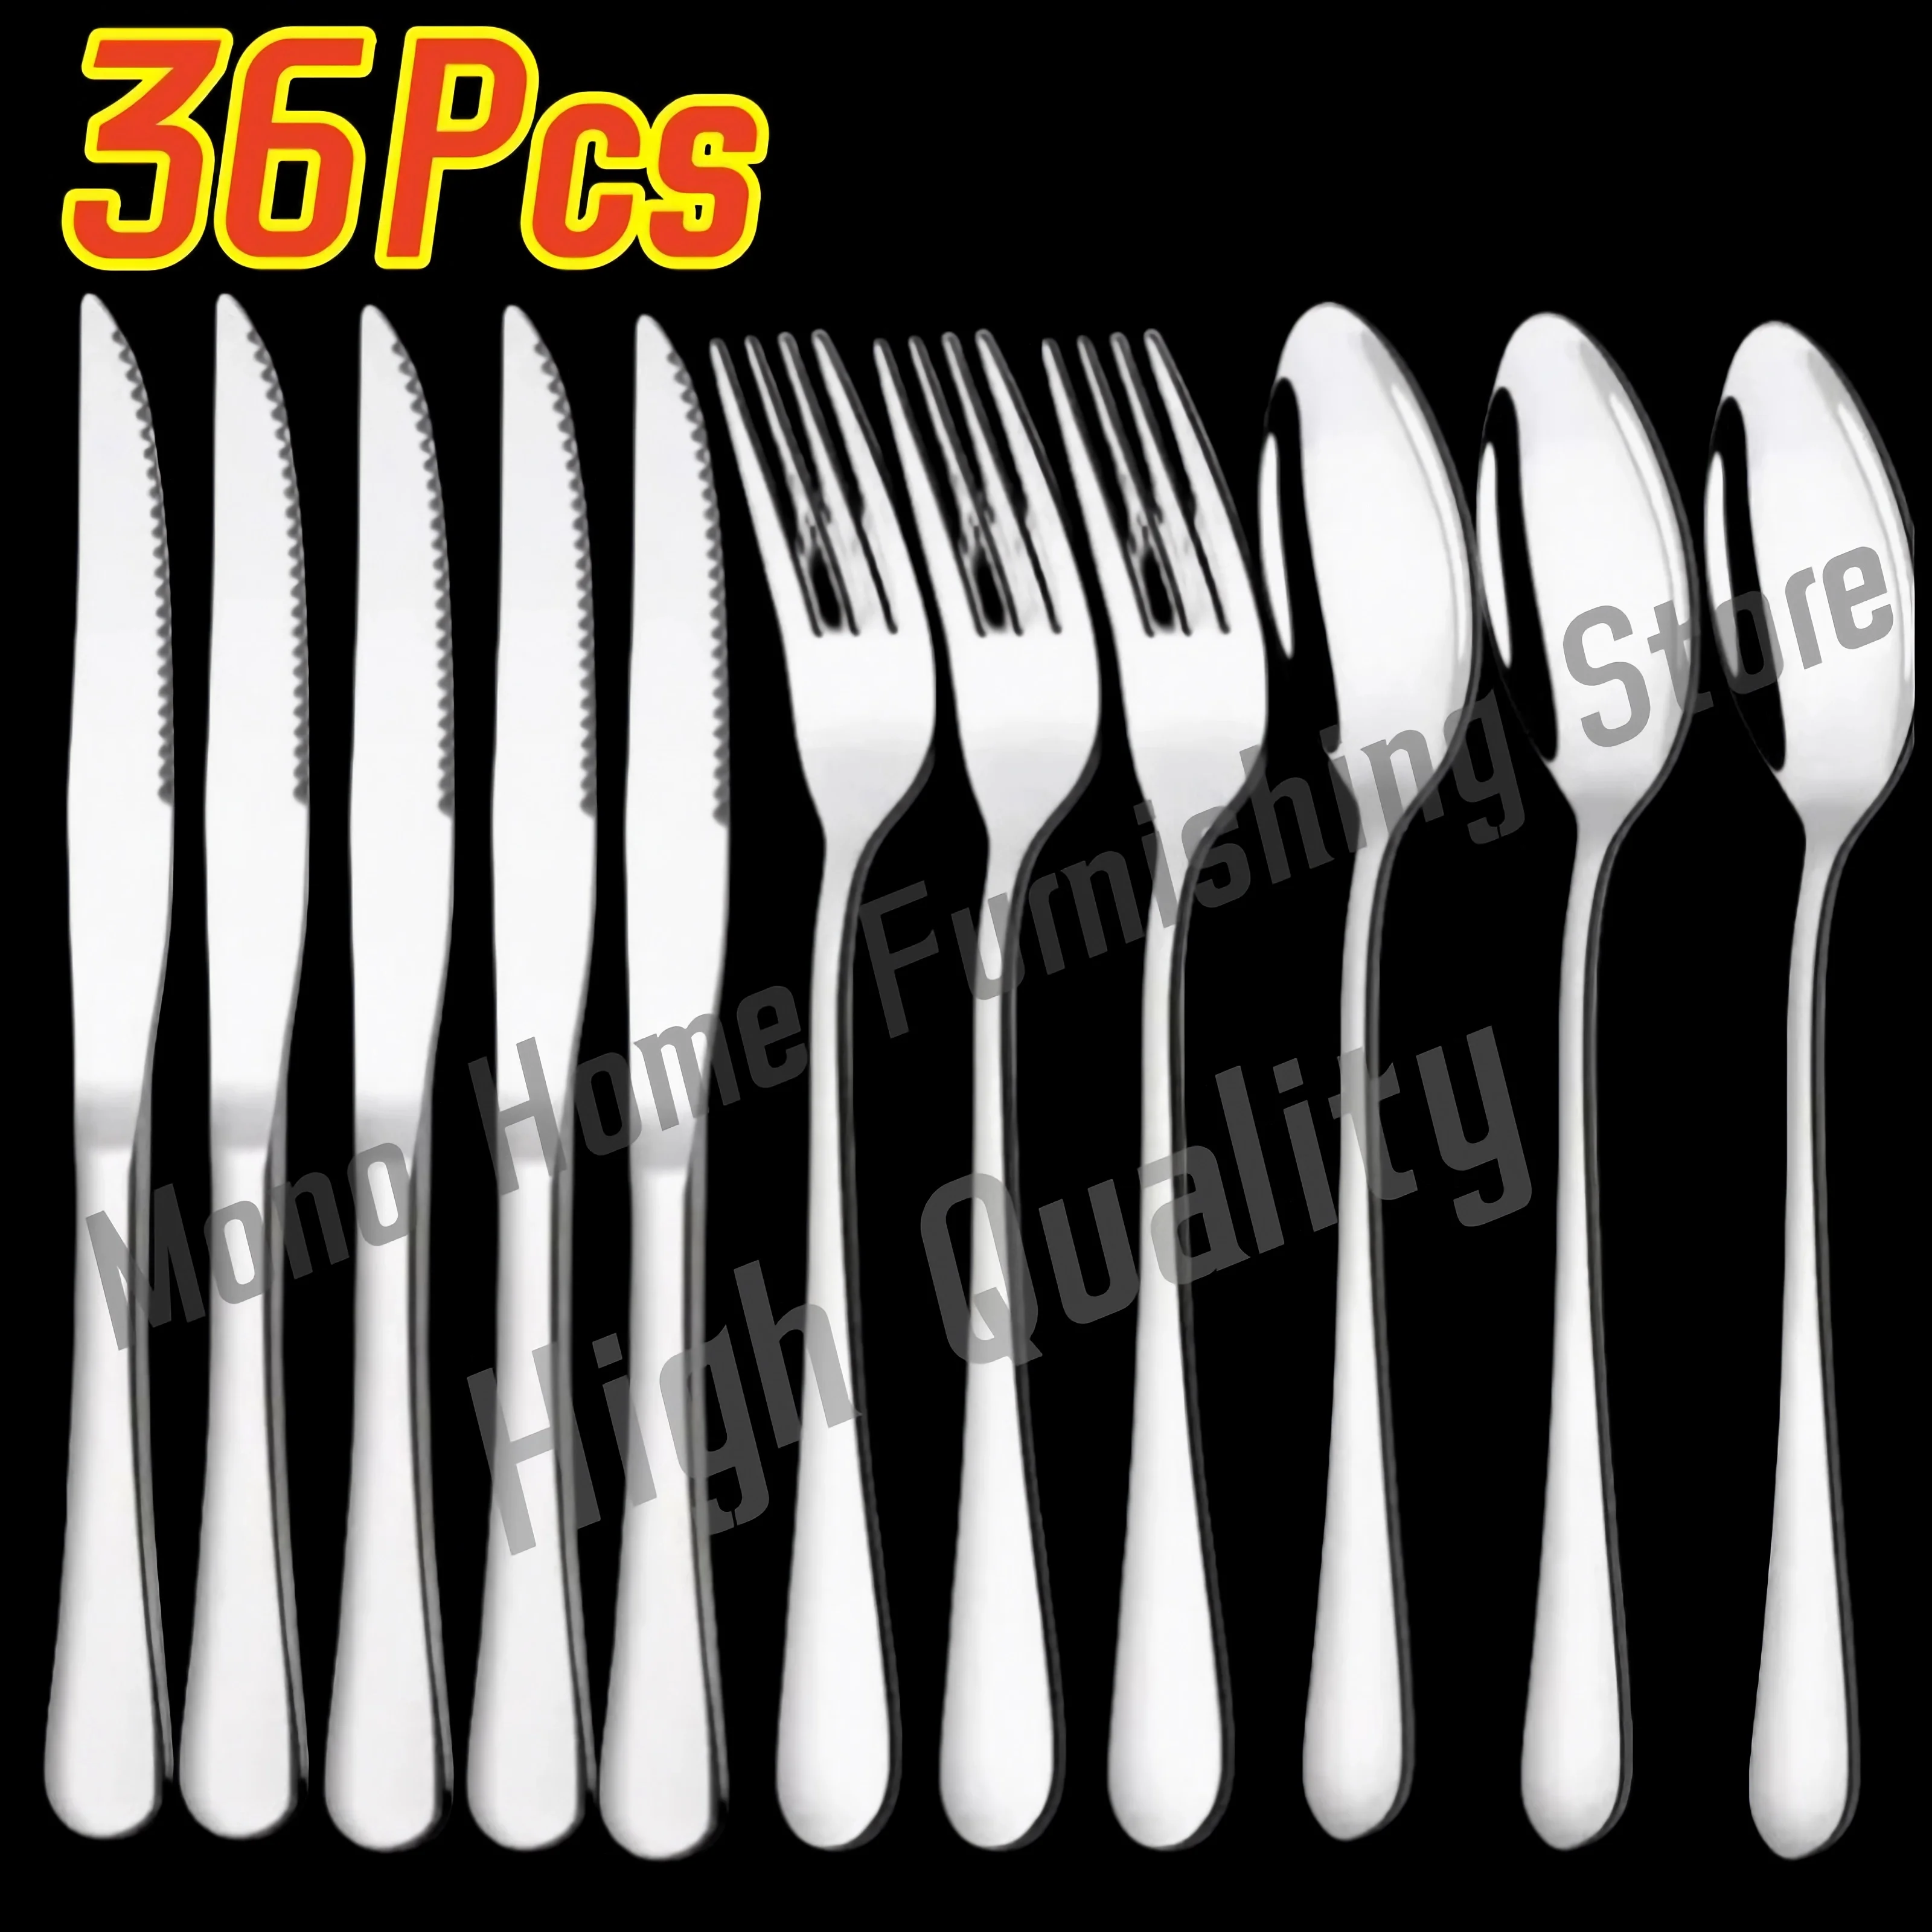 https://ae01.alicdn.com/kf/Sb9bbd5dce1f94a6ca48a7e8d049619f0Y/36Pcs-Silver-Dinnerware-Set-Stainless-Steel-Steak-Knife-Fork-Coffee-Spoon-Teaspoon-Flatware-Dishwasher-Safe-Kitchen.jpg